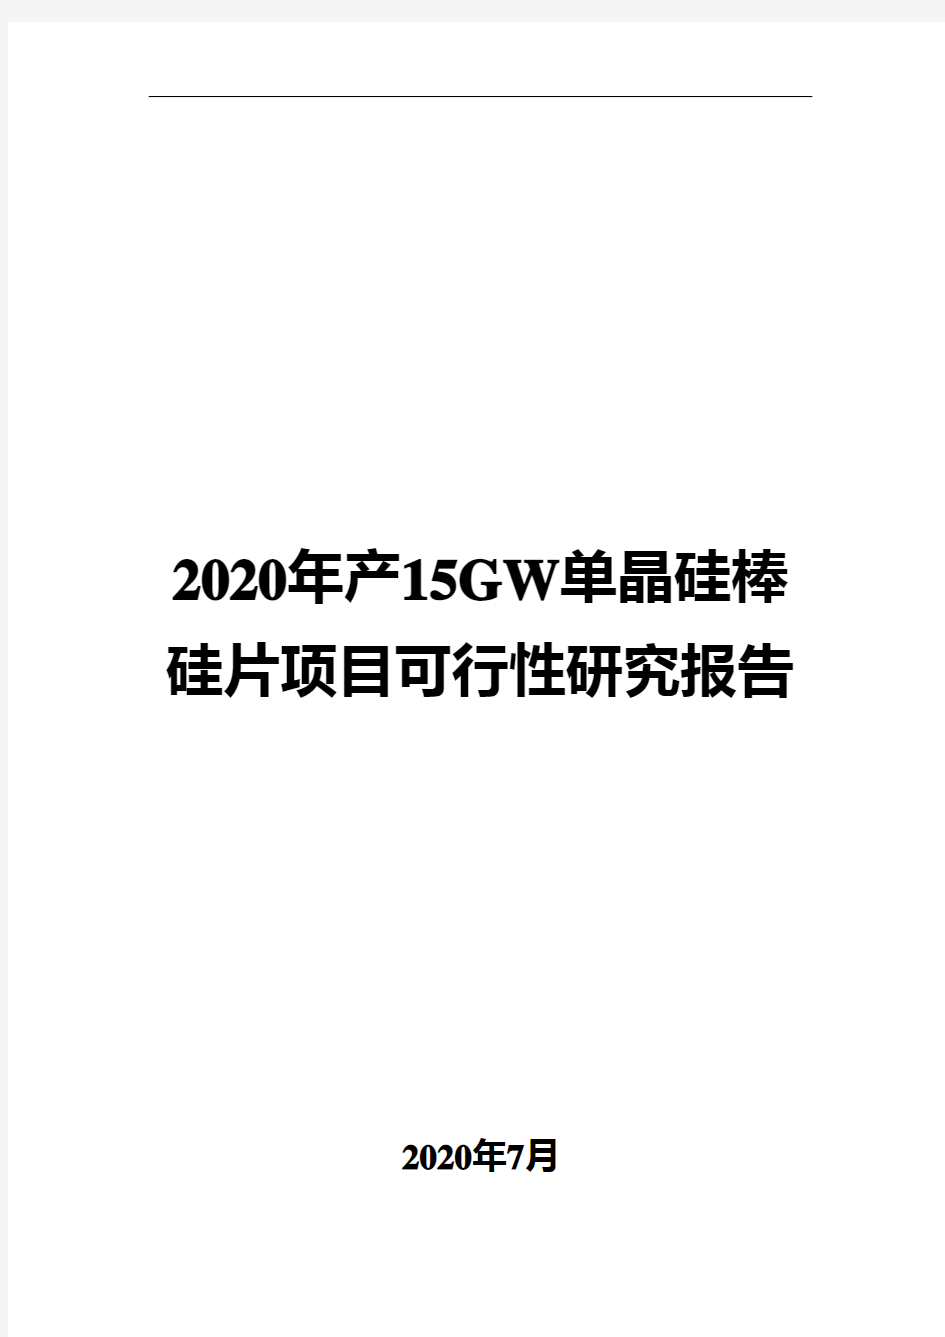 2020年产15GW单晶硅棒硅片项目可行性研究报告